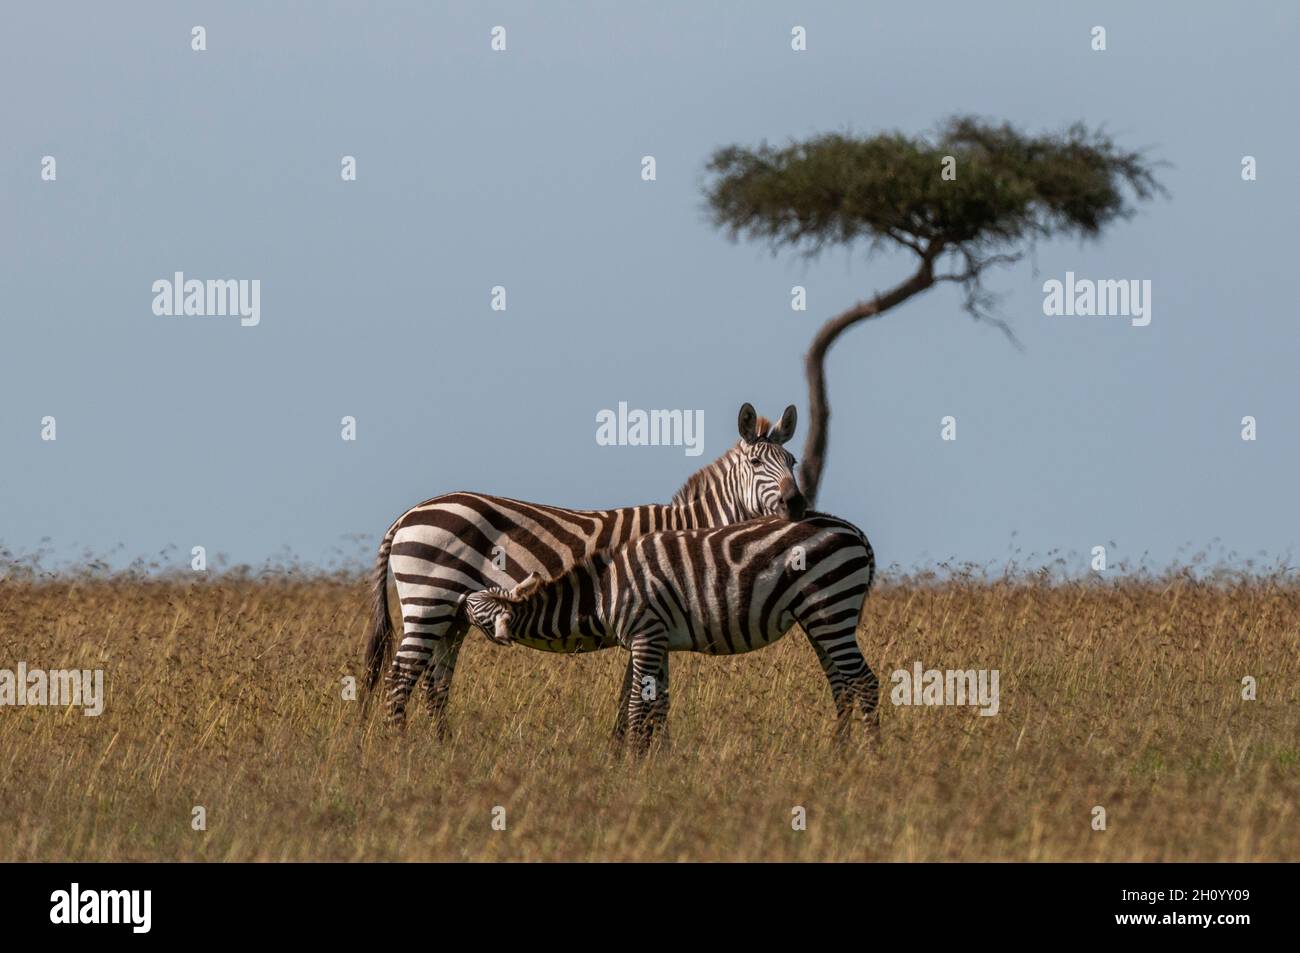 Ein gewöhnliches oder einsames Zebra-hengstfohlen, Equus quagga, das von seiner Mutter stillt. Masai Mara National Reserve, Kenia. Stockfoto